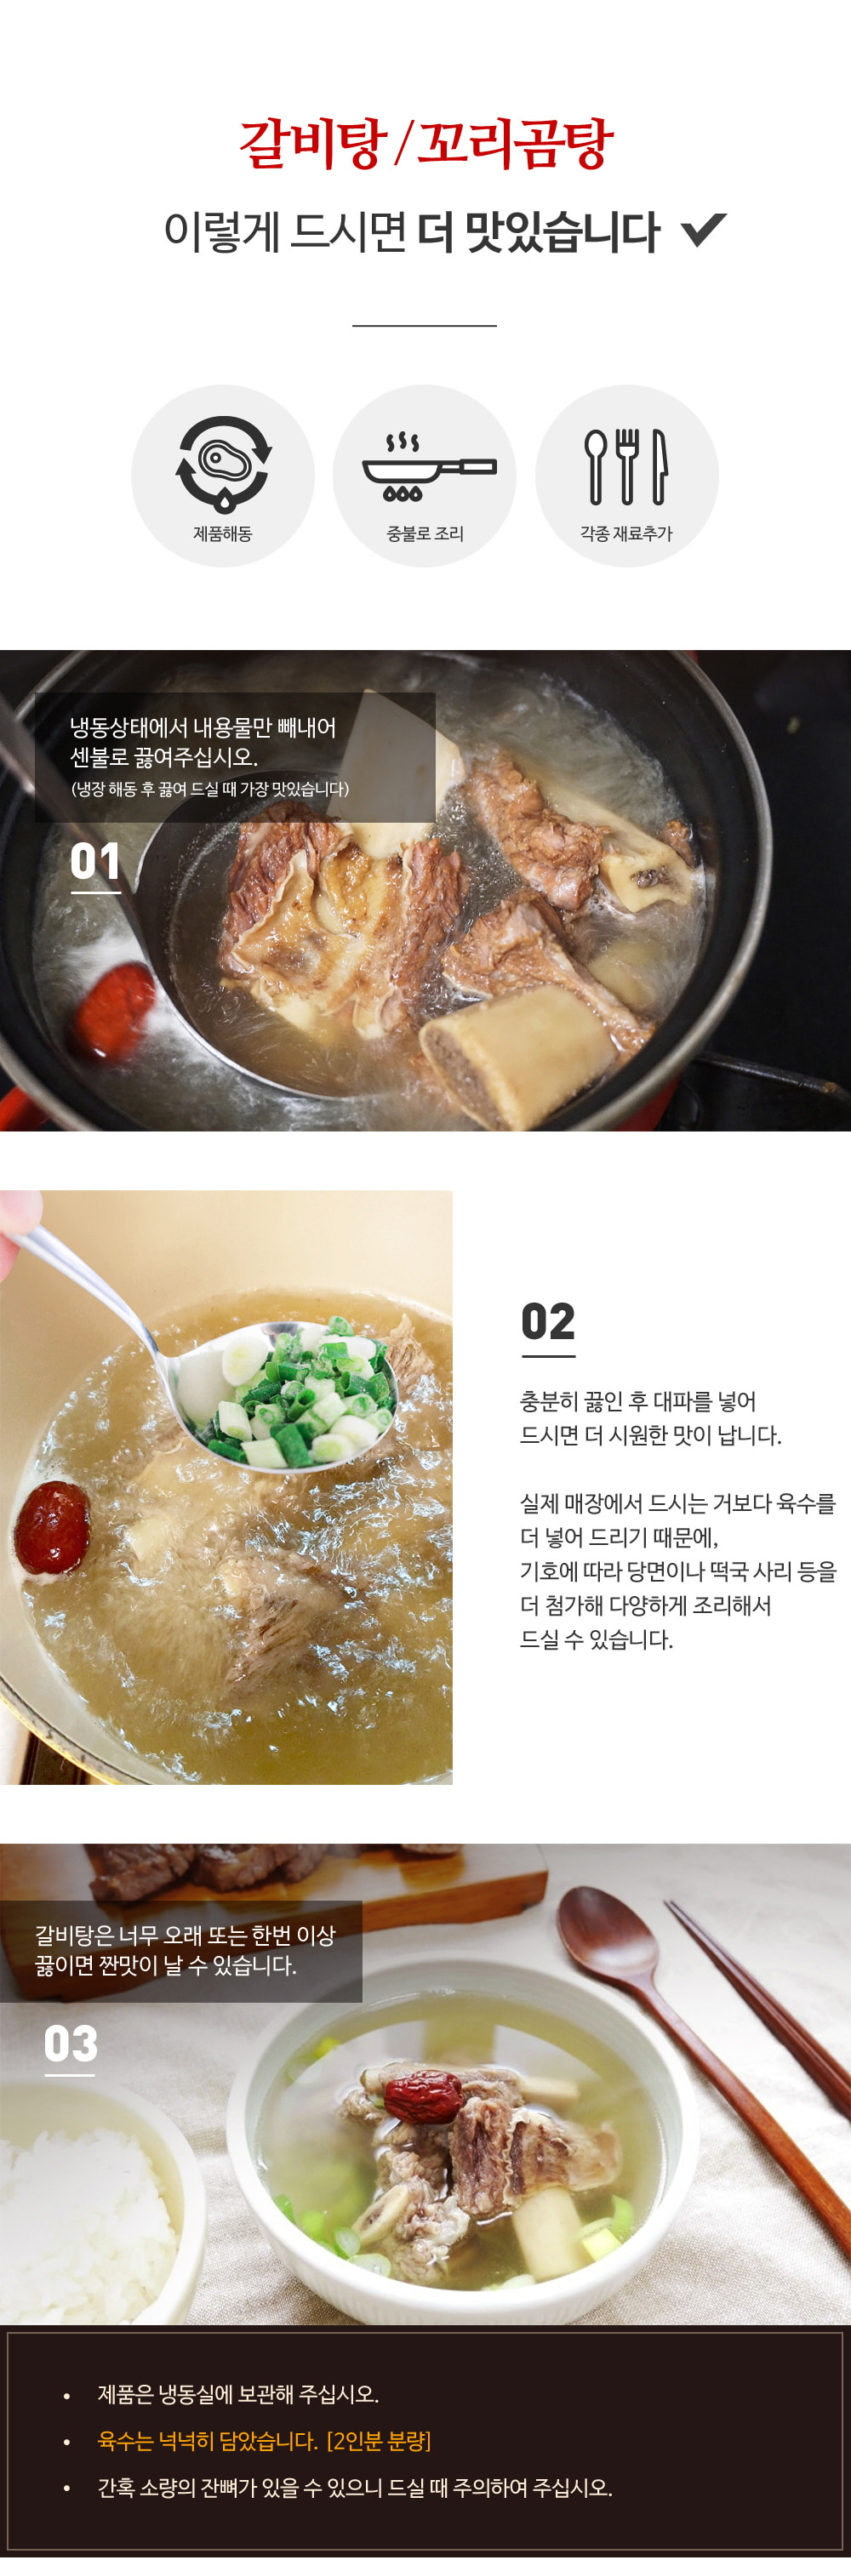 韓國食品-[Samihun] Short Short Rib Soup Galbitang 1kg